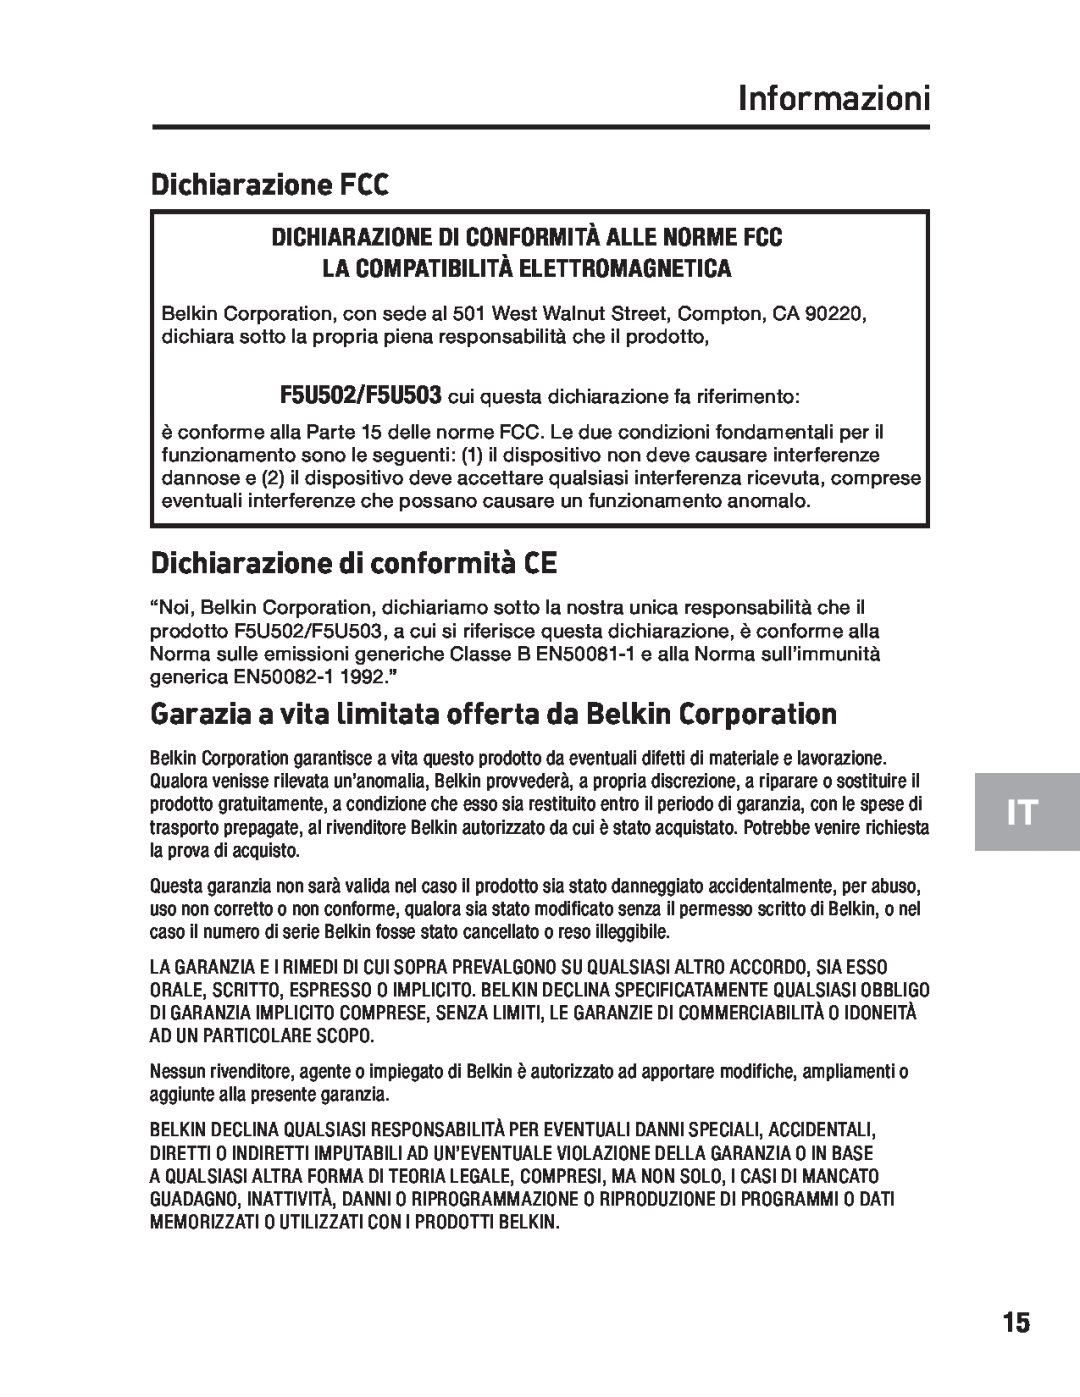 Belkin F5U502, F5U503 user manual Informazioni, Dichiarazione FCC, Dichiarazione di conformità CE 